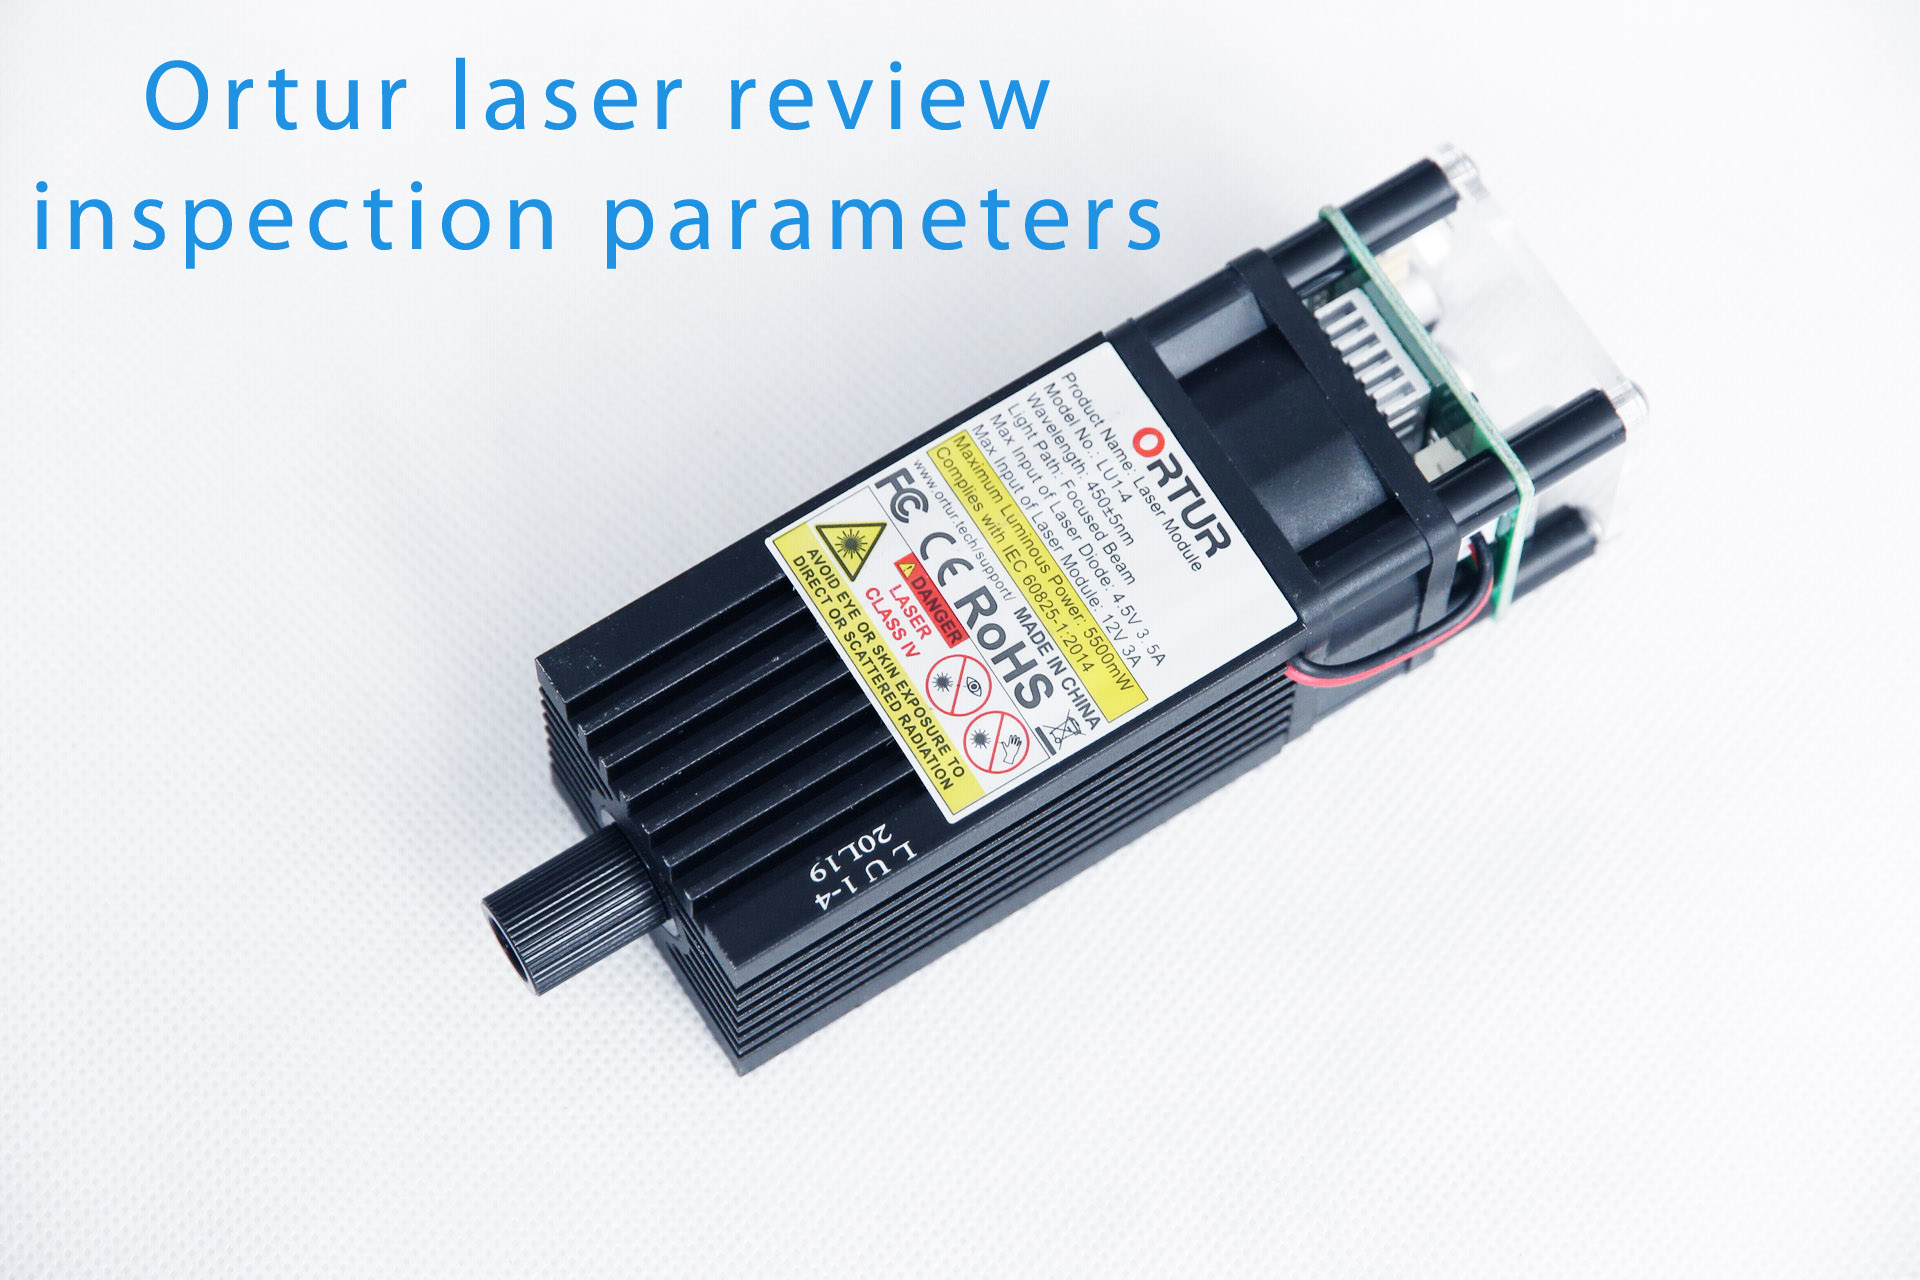 Ortur laser inspection